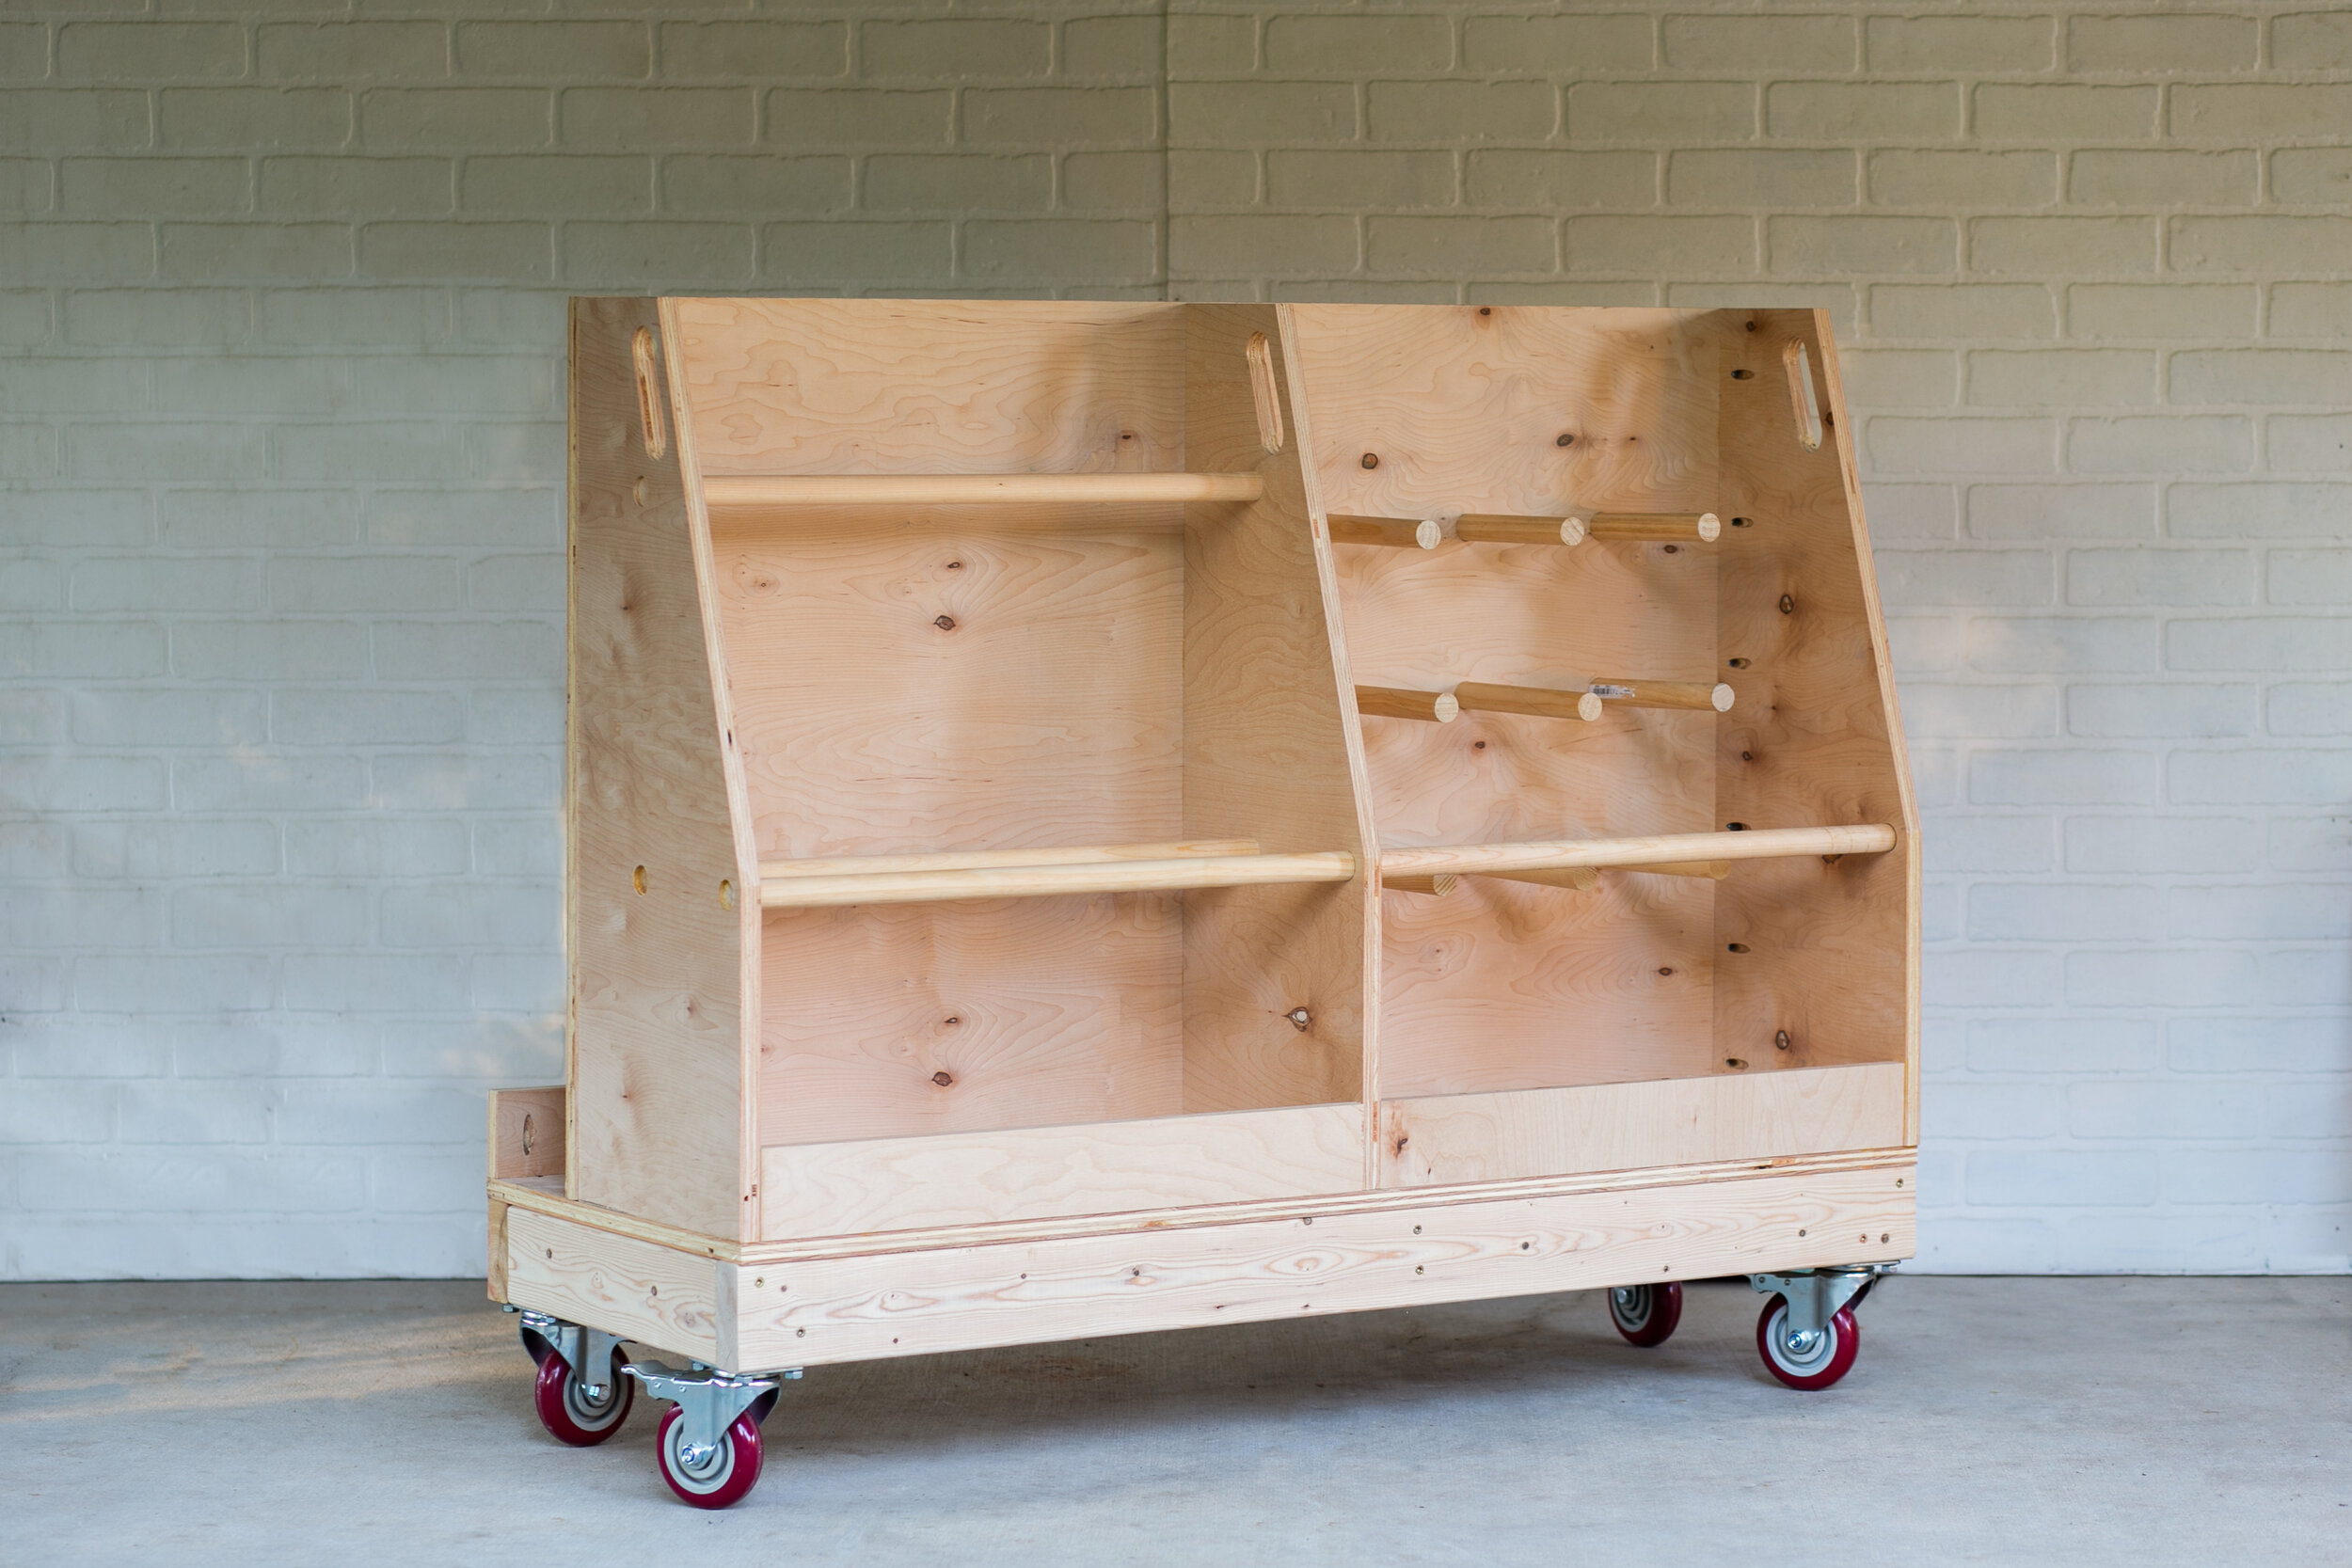 DIY Mobile Scrap Wood & Plywood Storage Cart